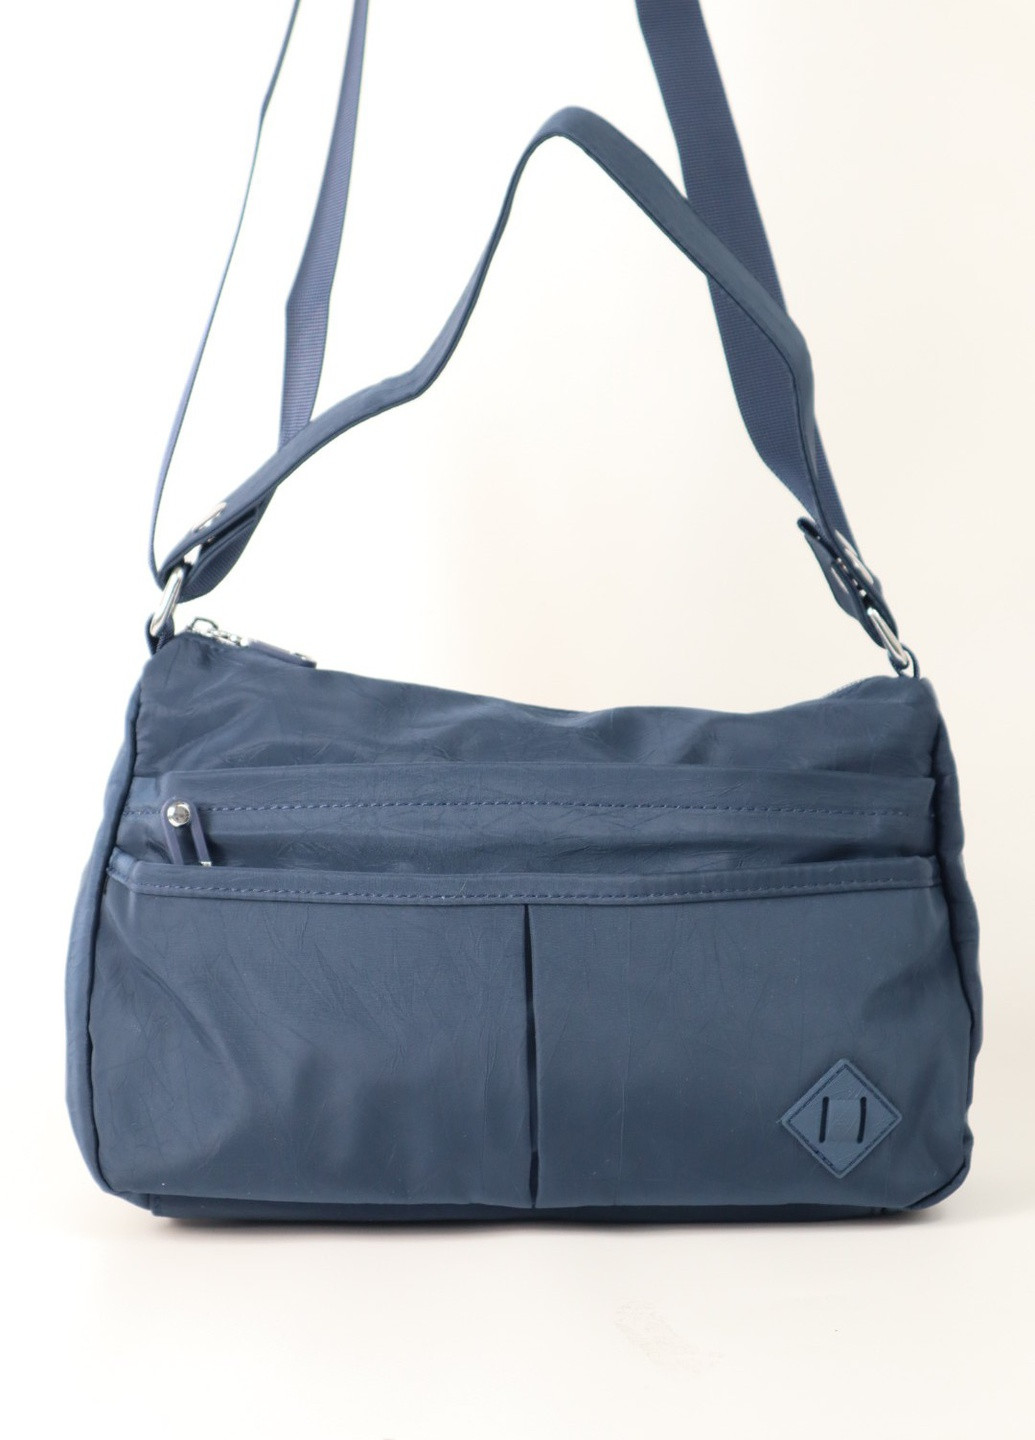 Сумка / Сумка женская / Женская текстильная сумка / MAGICBAG однотонная синяя спортивная